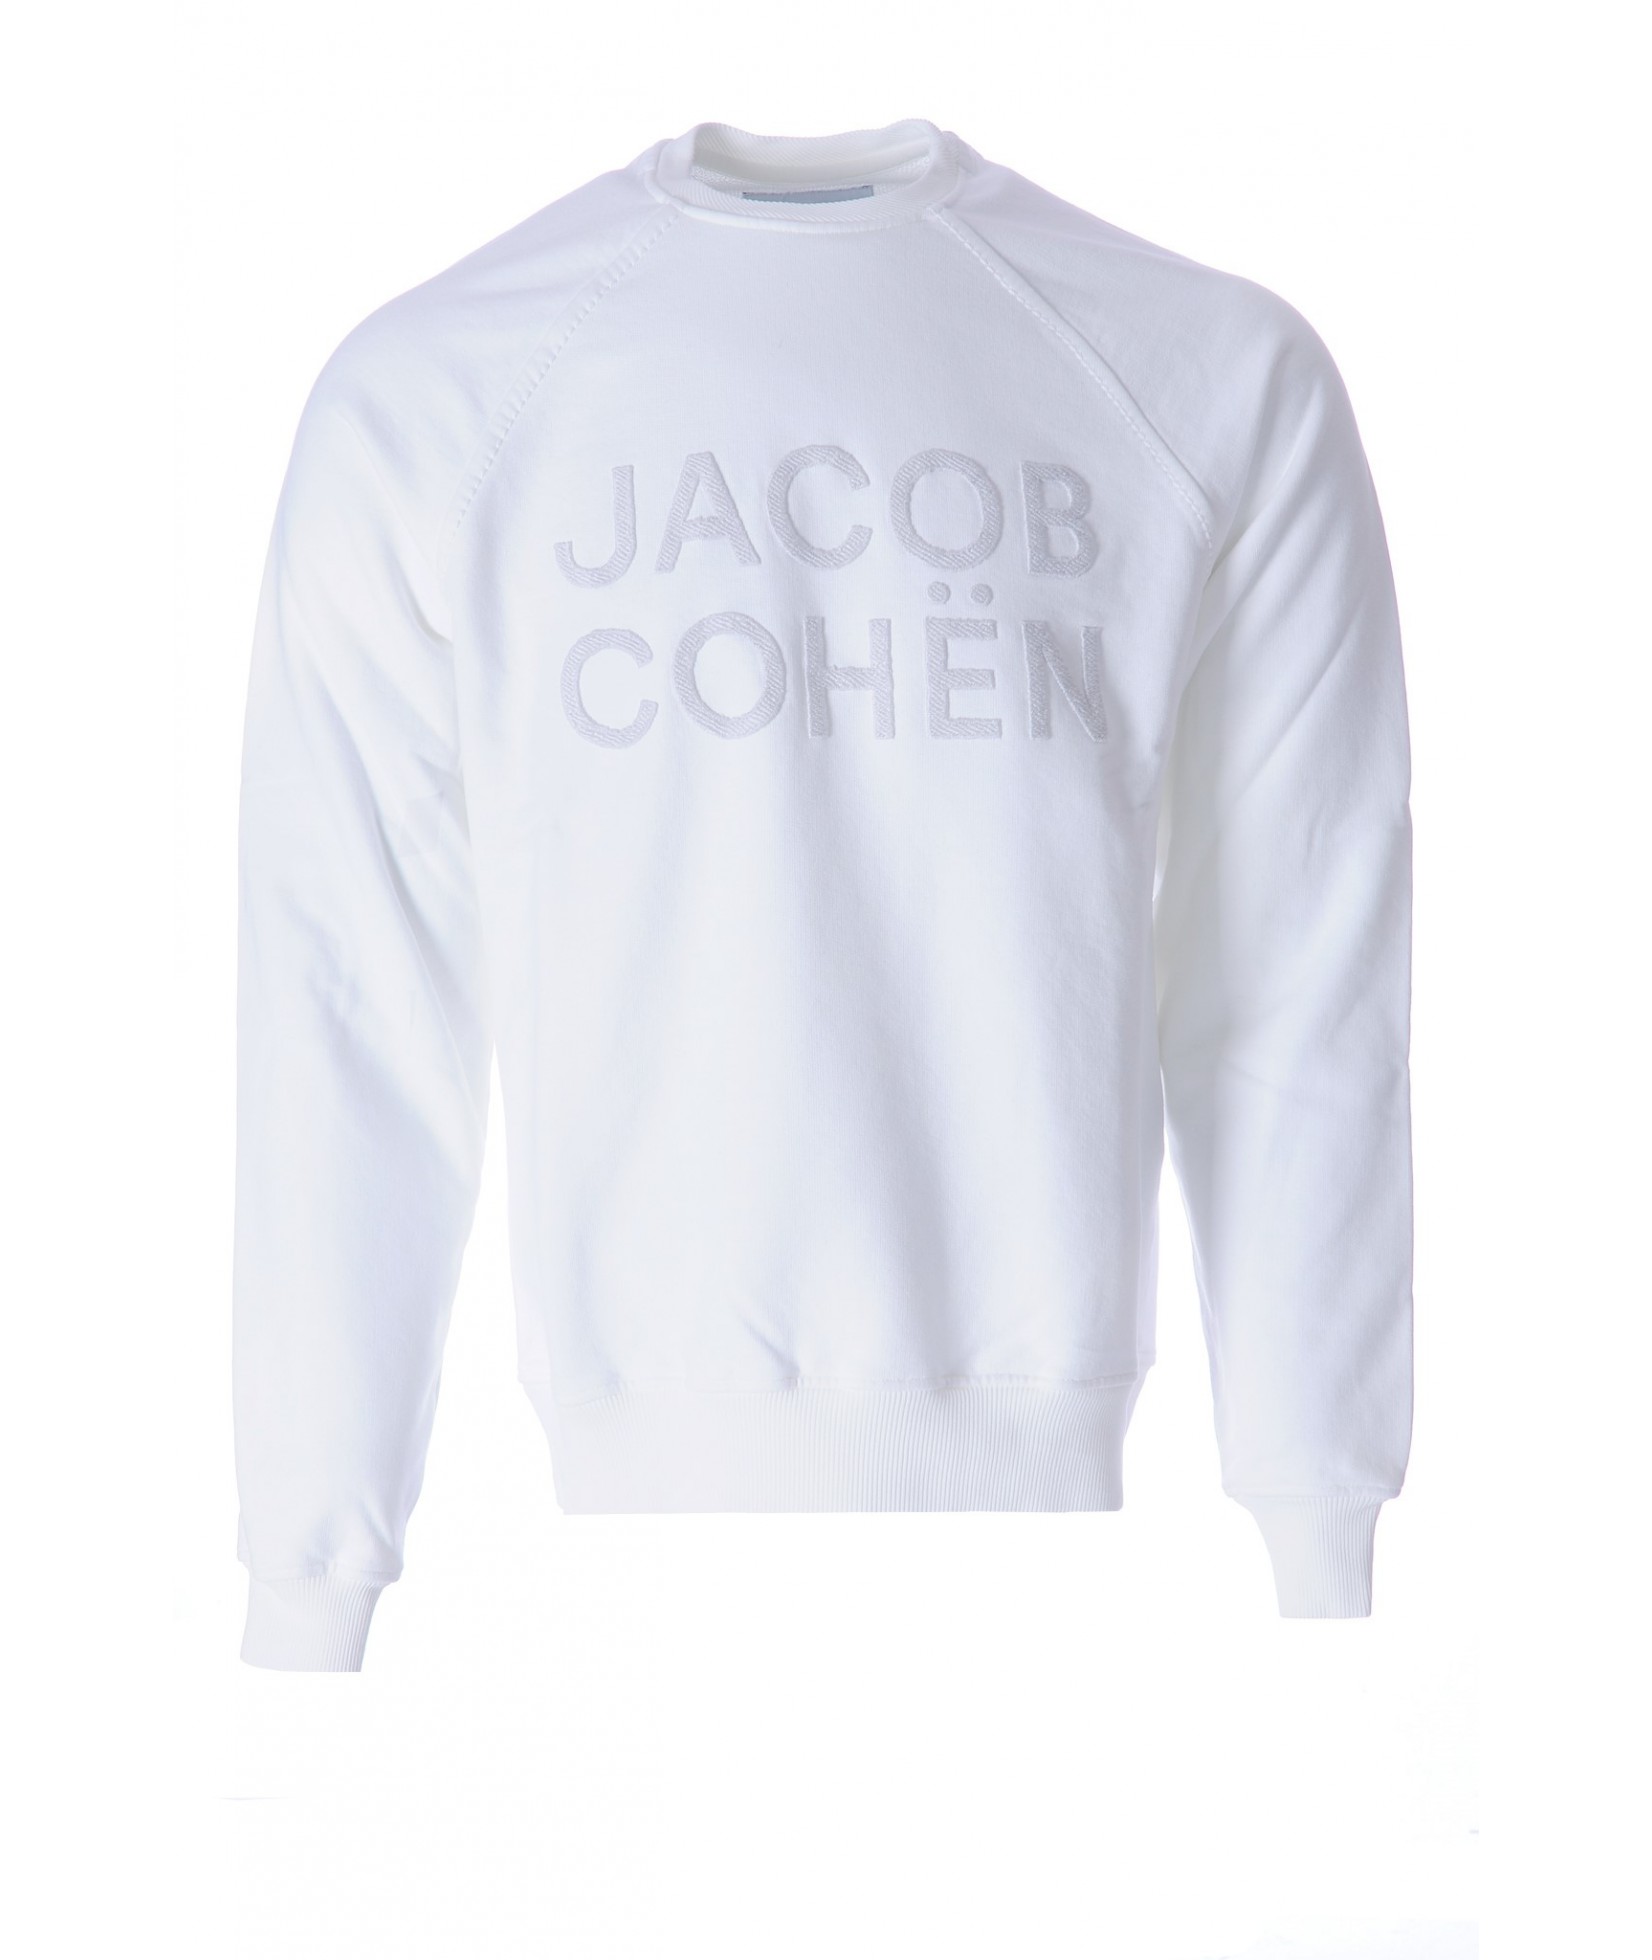 Jacob Cohën sweater wit (34846)